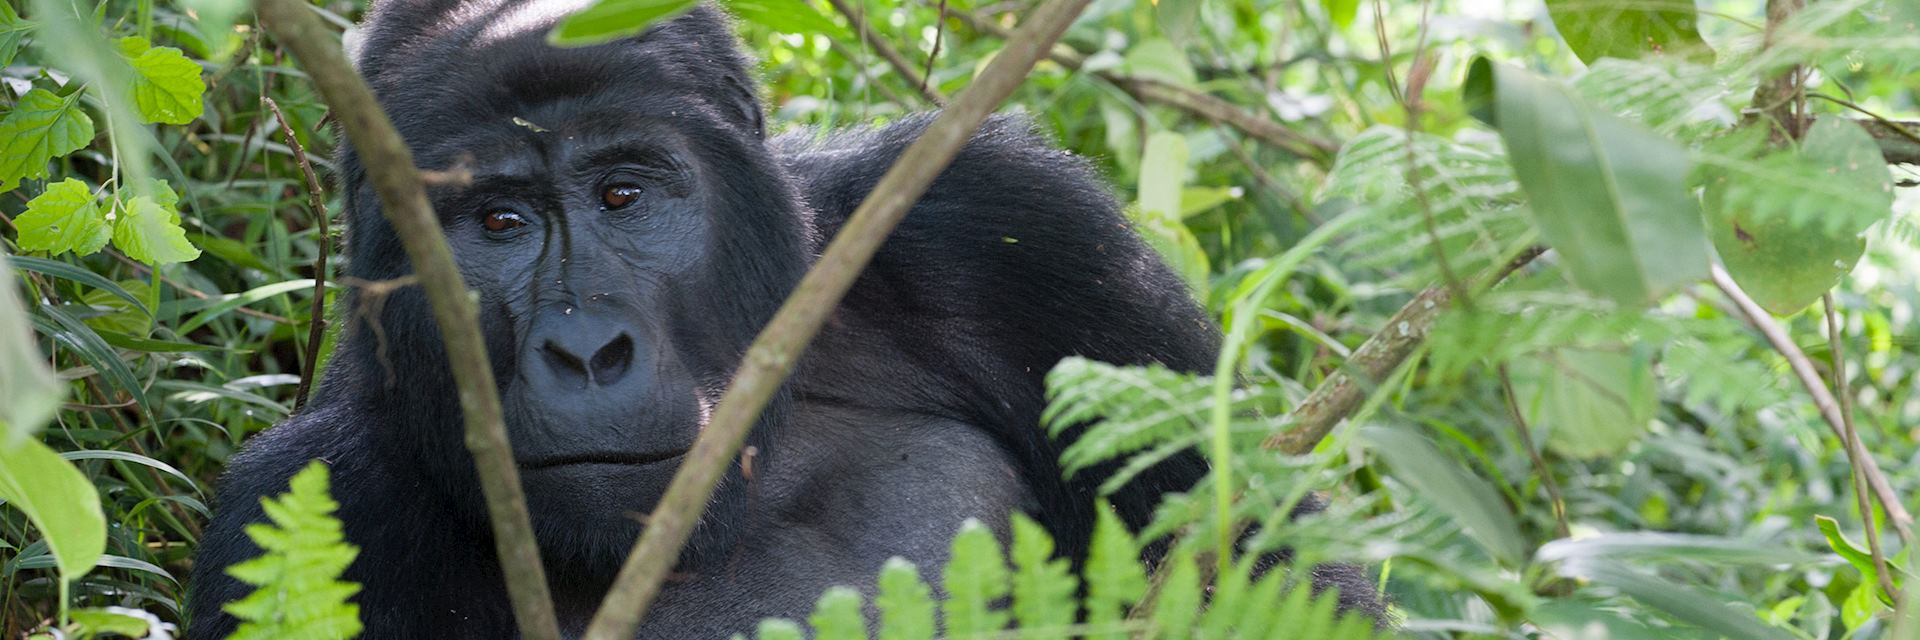 Gorilla, Bwindi Impenetrable Forest, Uganda